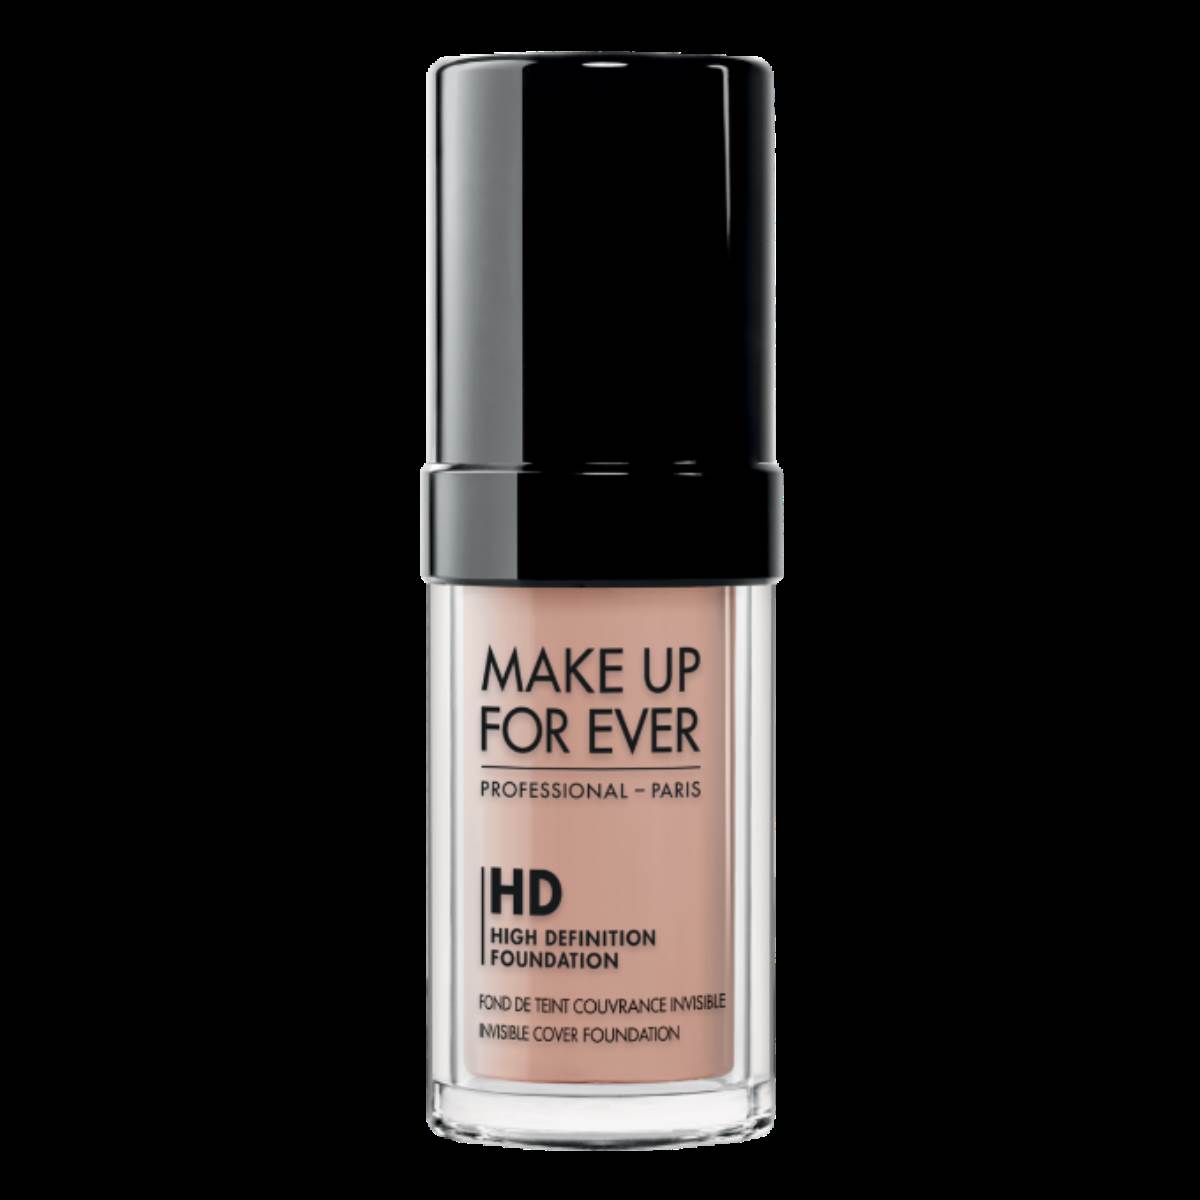  Make up for ever HD High definition foundation je jedan od najboljih pudera za zimu, 